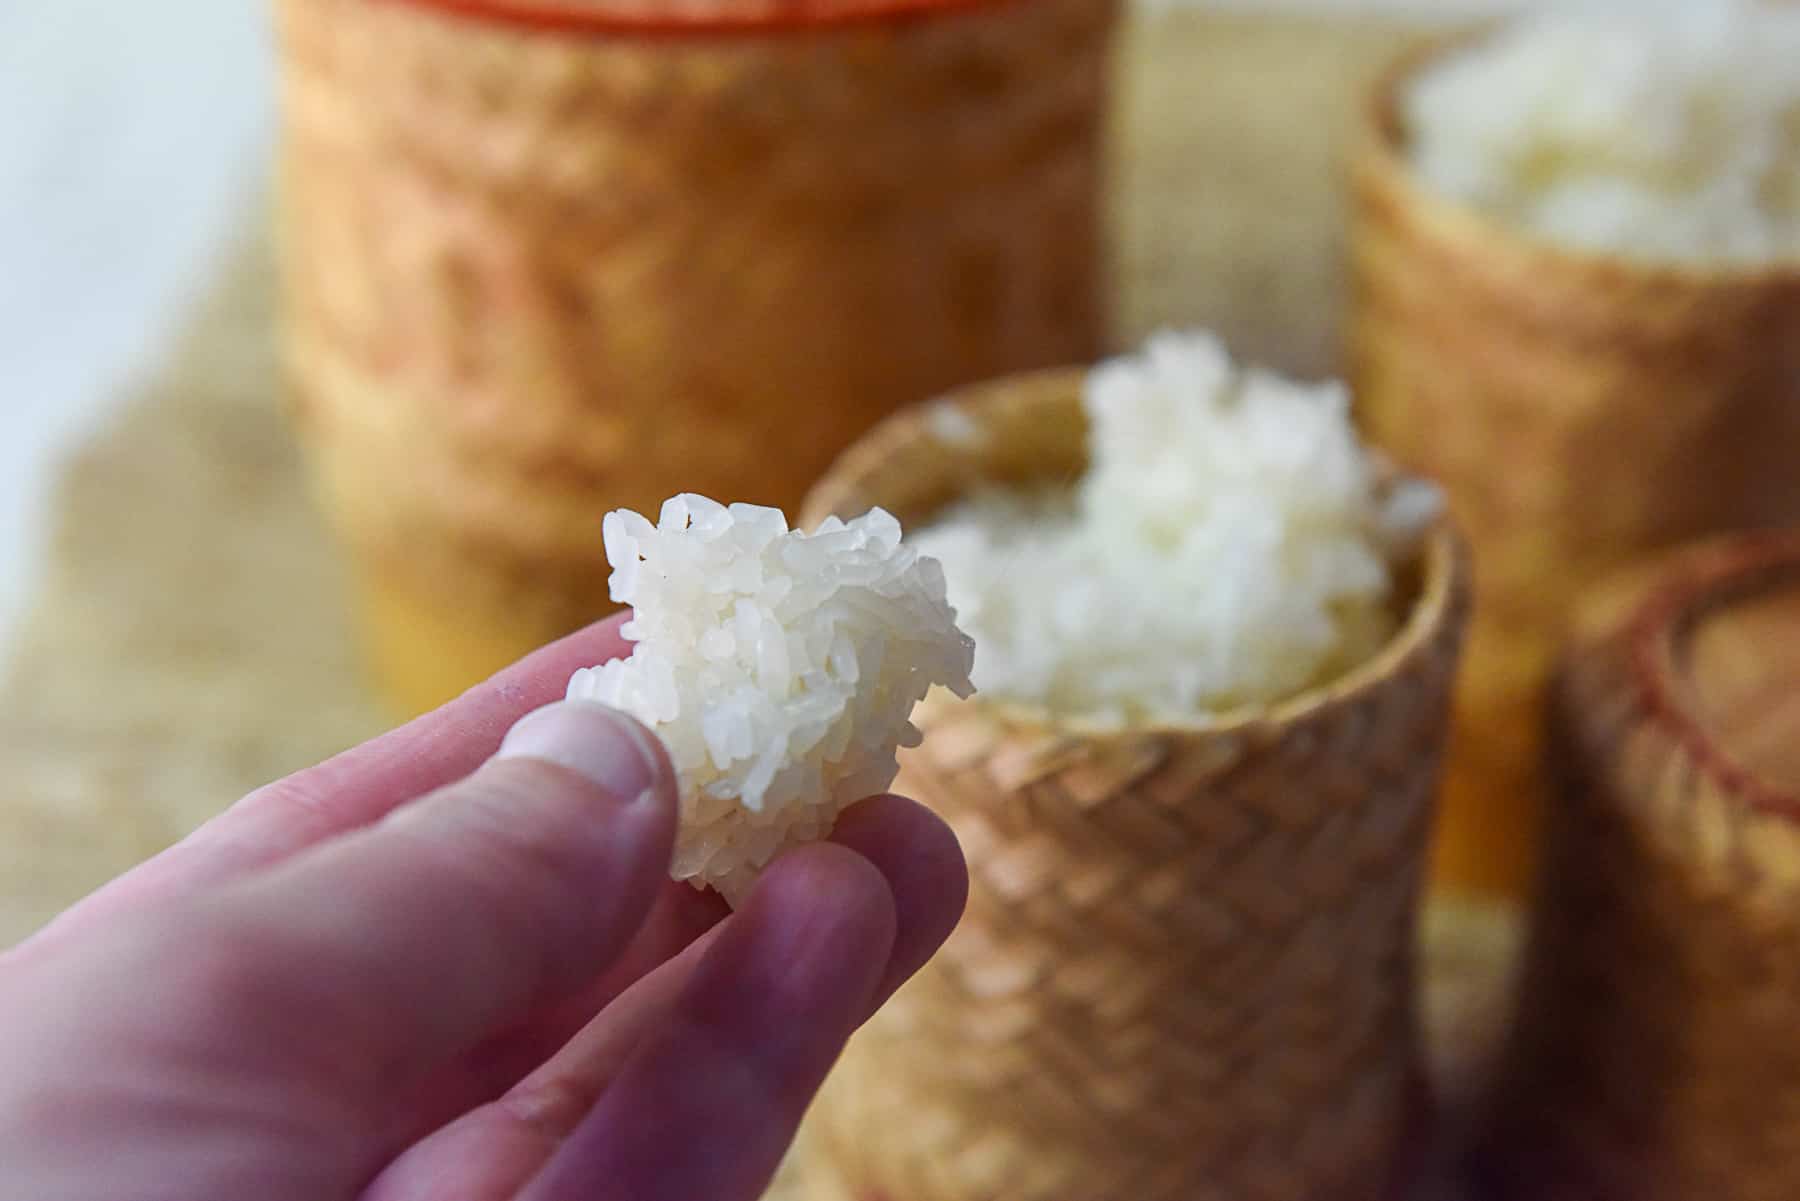 A ball of sticky rice